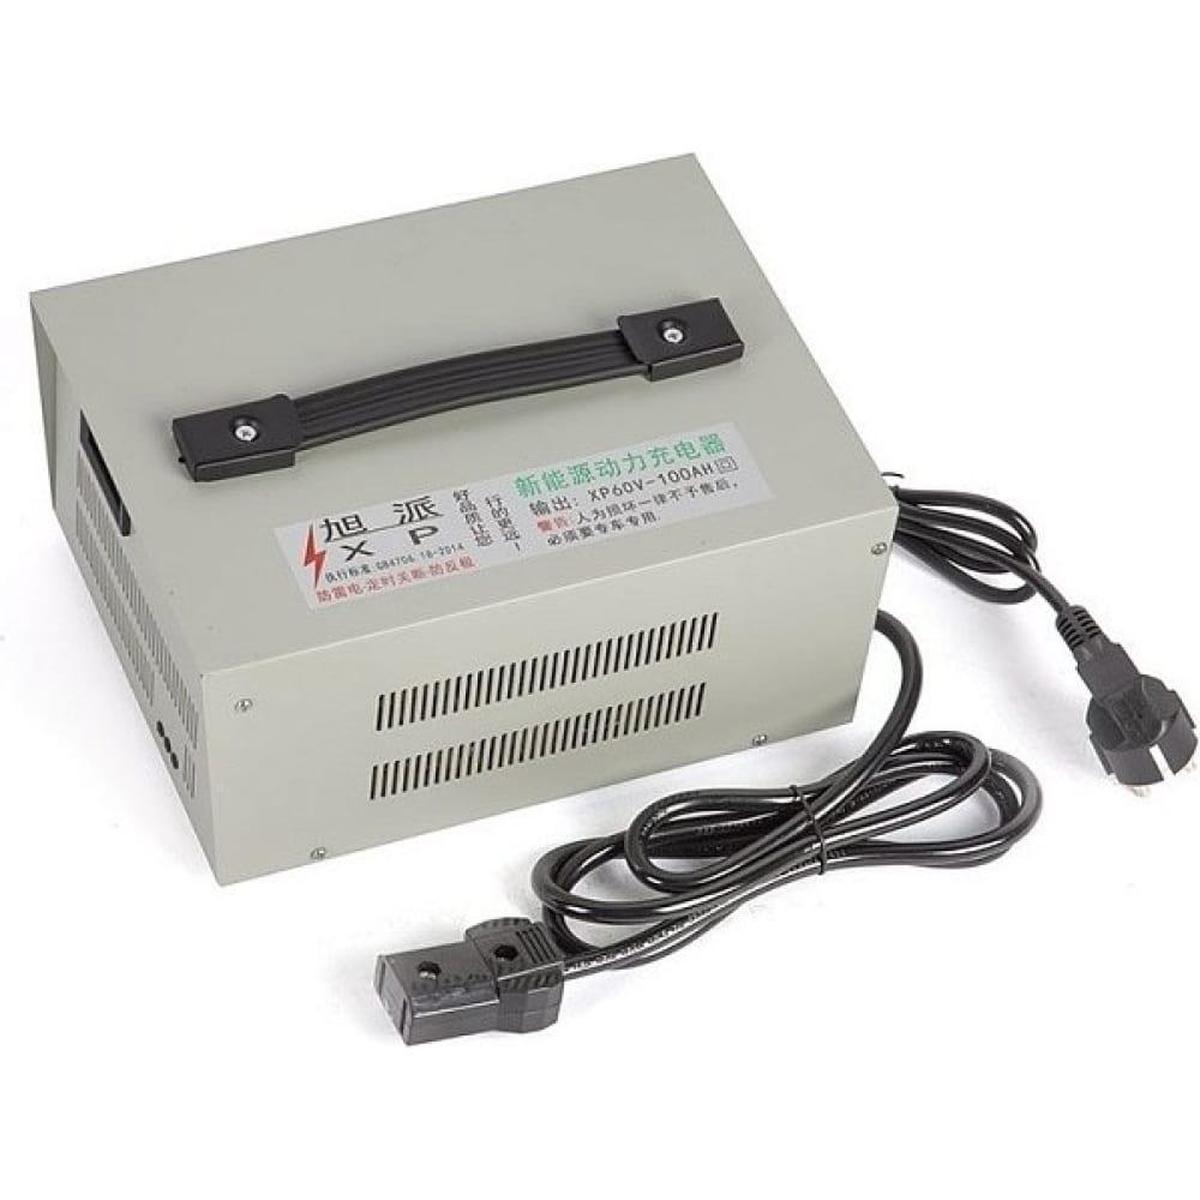 УЗ-205.10 Электронный прикуриватель, Устройство зарядное для свинцовых аккумуляторов